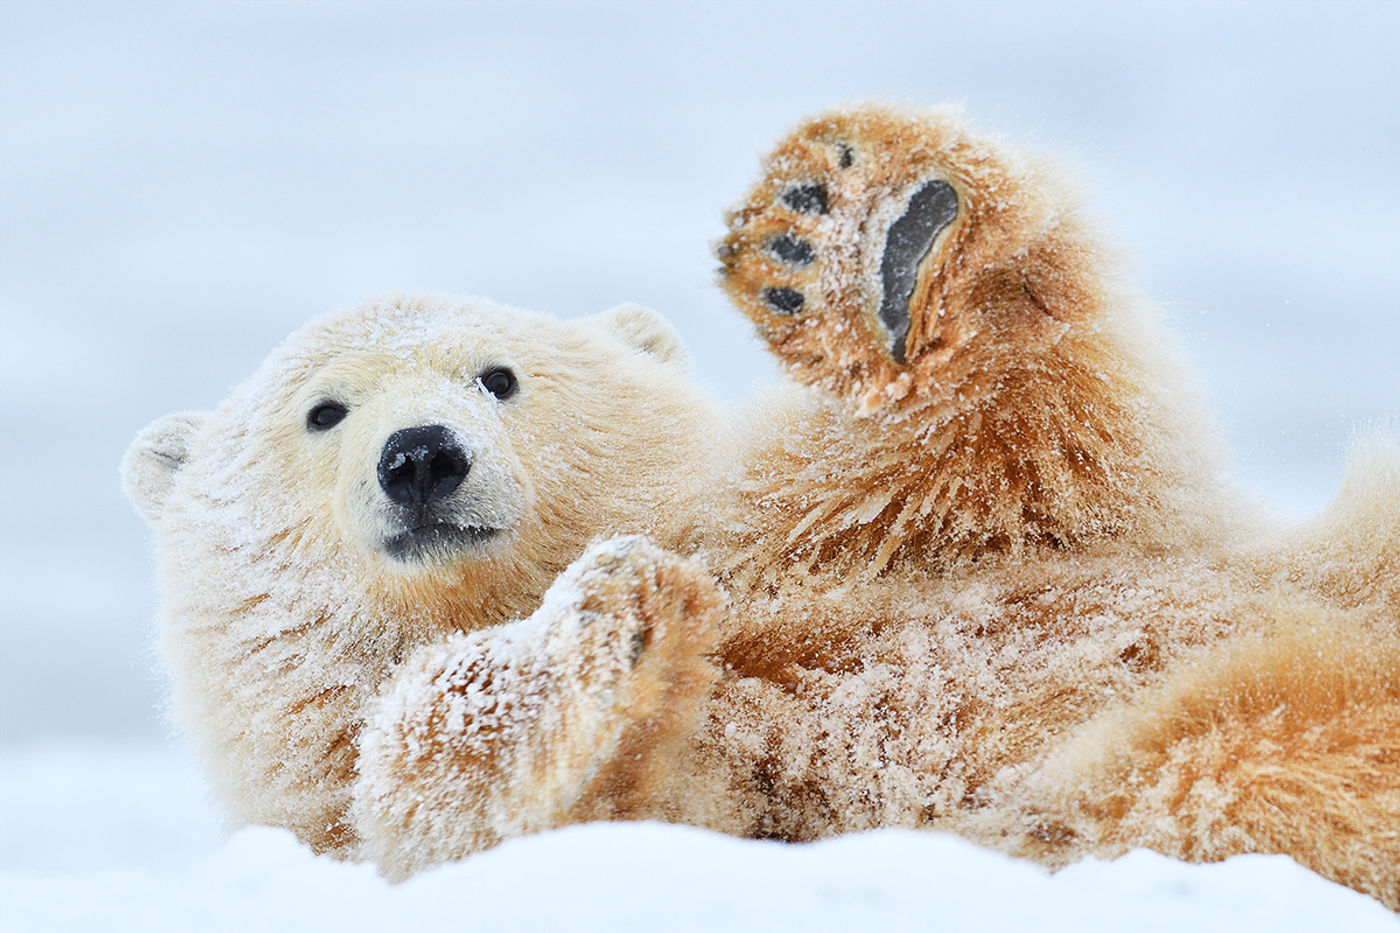 Oog in oog met jouw eerste ijsbeer?! Dat is ongetwijfeld een goeie kanshebber voor jouw STARLING hoogtepunt of droom. © Yves Adams